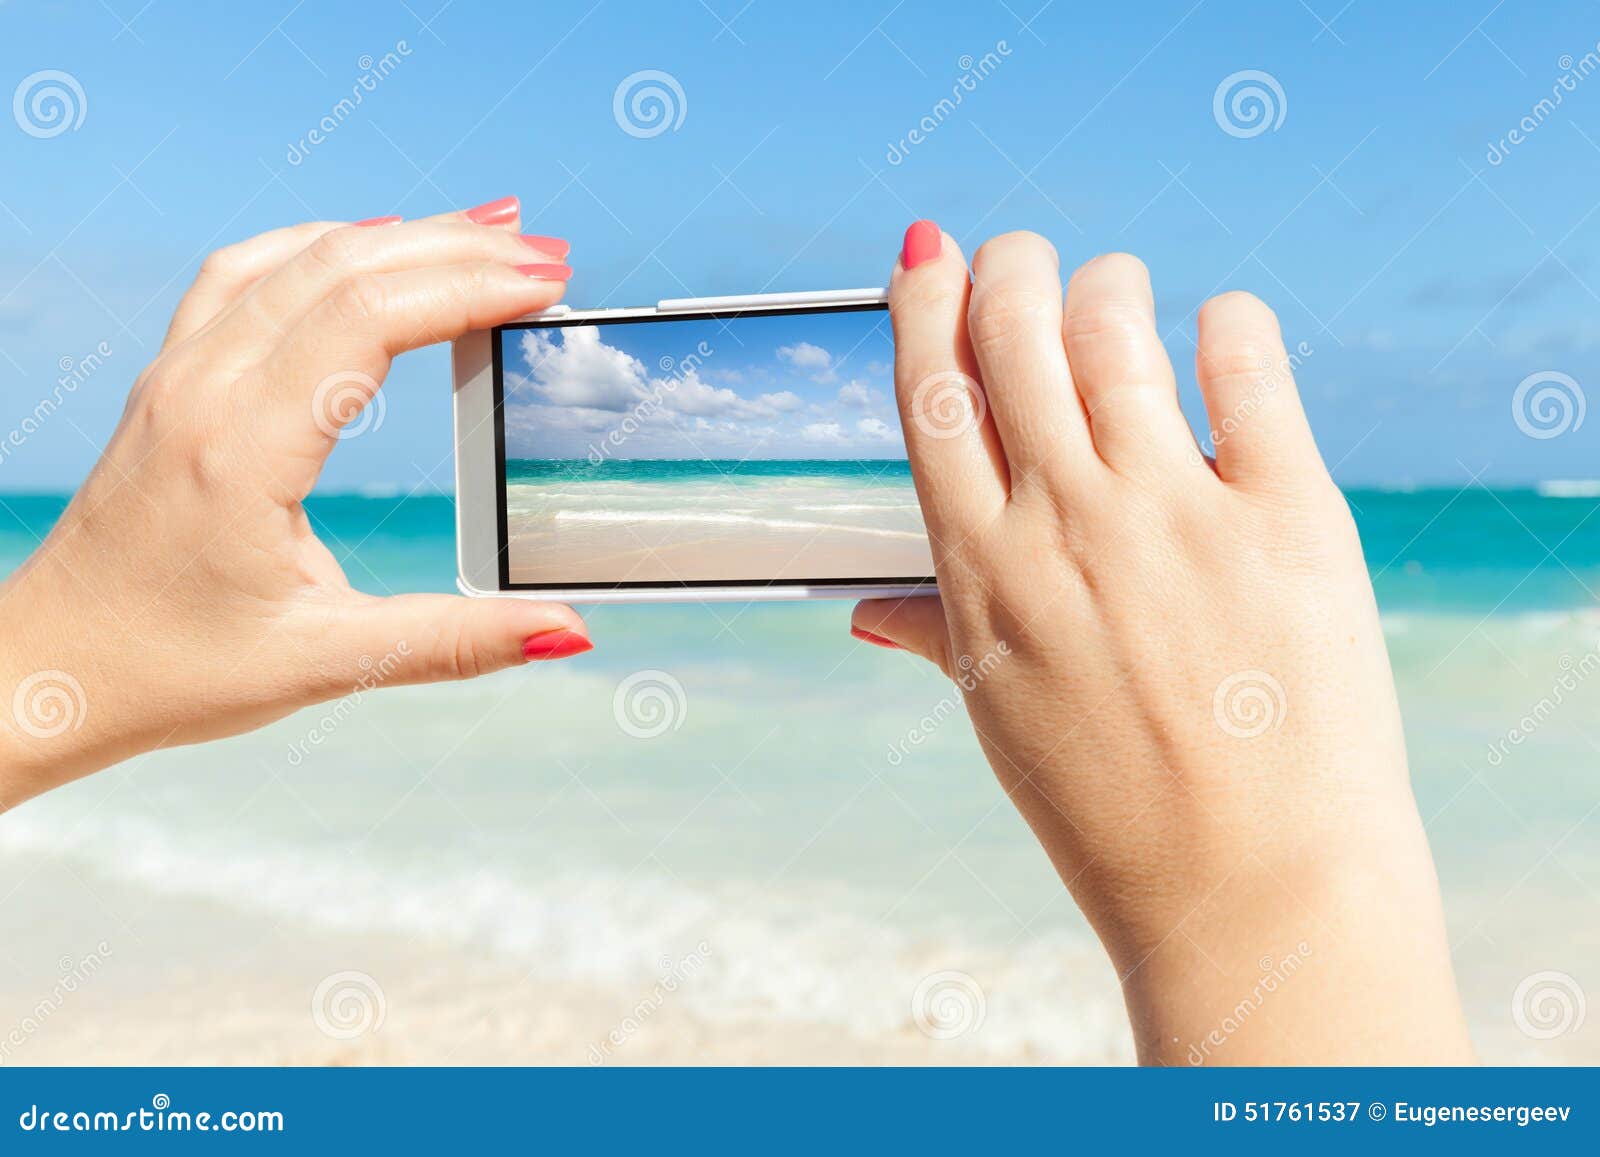 Mujer Que Usa El Teléfono Celular Para Tomar La Foto Del Paisaje Del Mar  Imagen de archivo - Imagen de costa, foto: 51761537